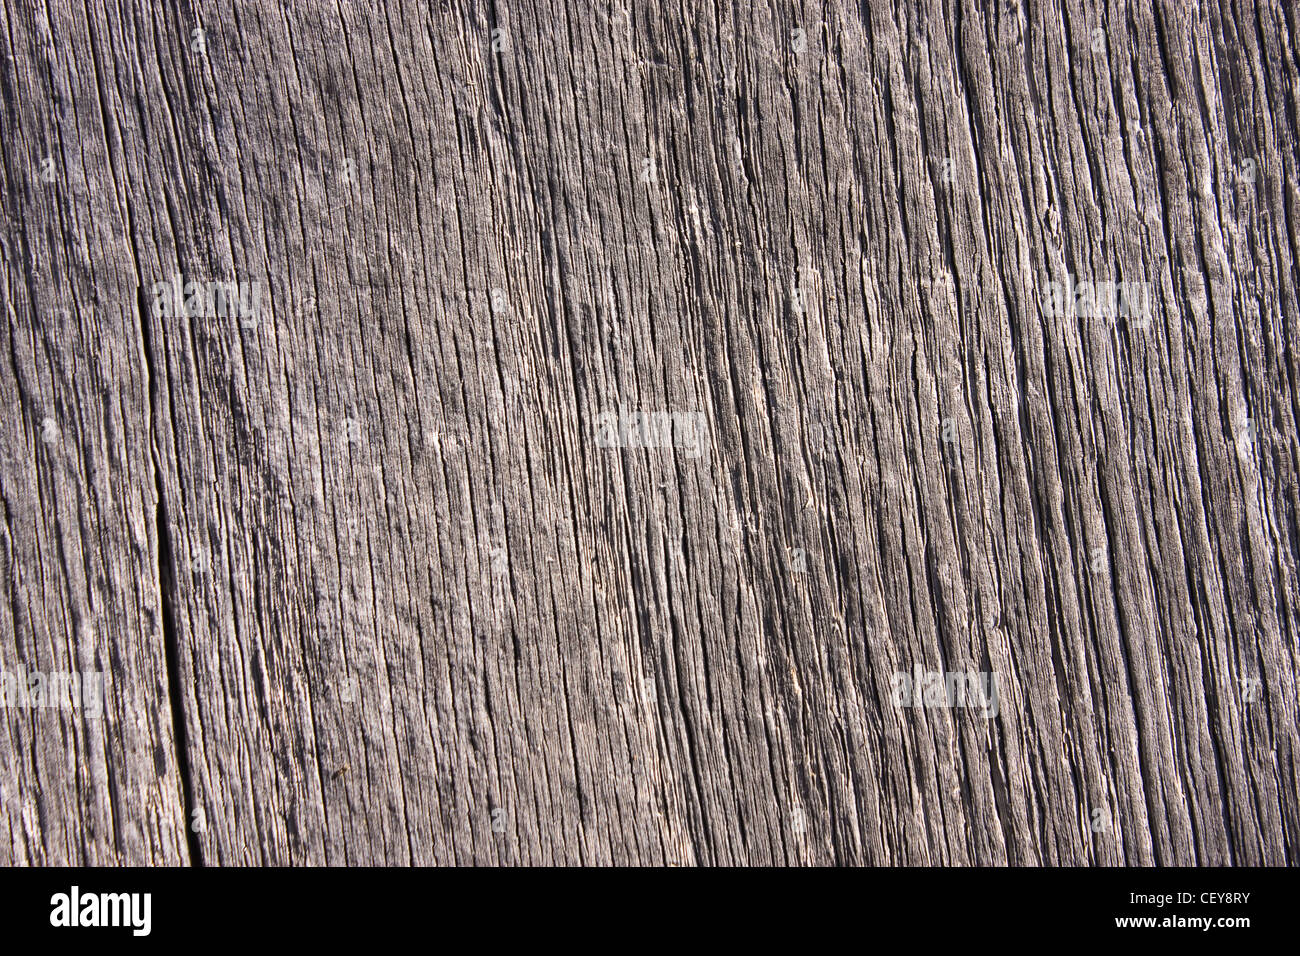 Textur von einem hölzernen Brett, Details sichtbar Stockfoto